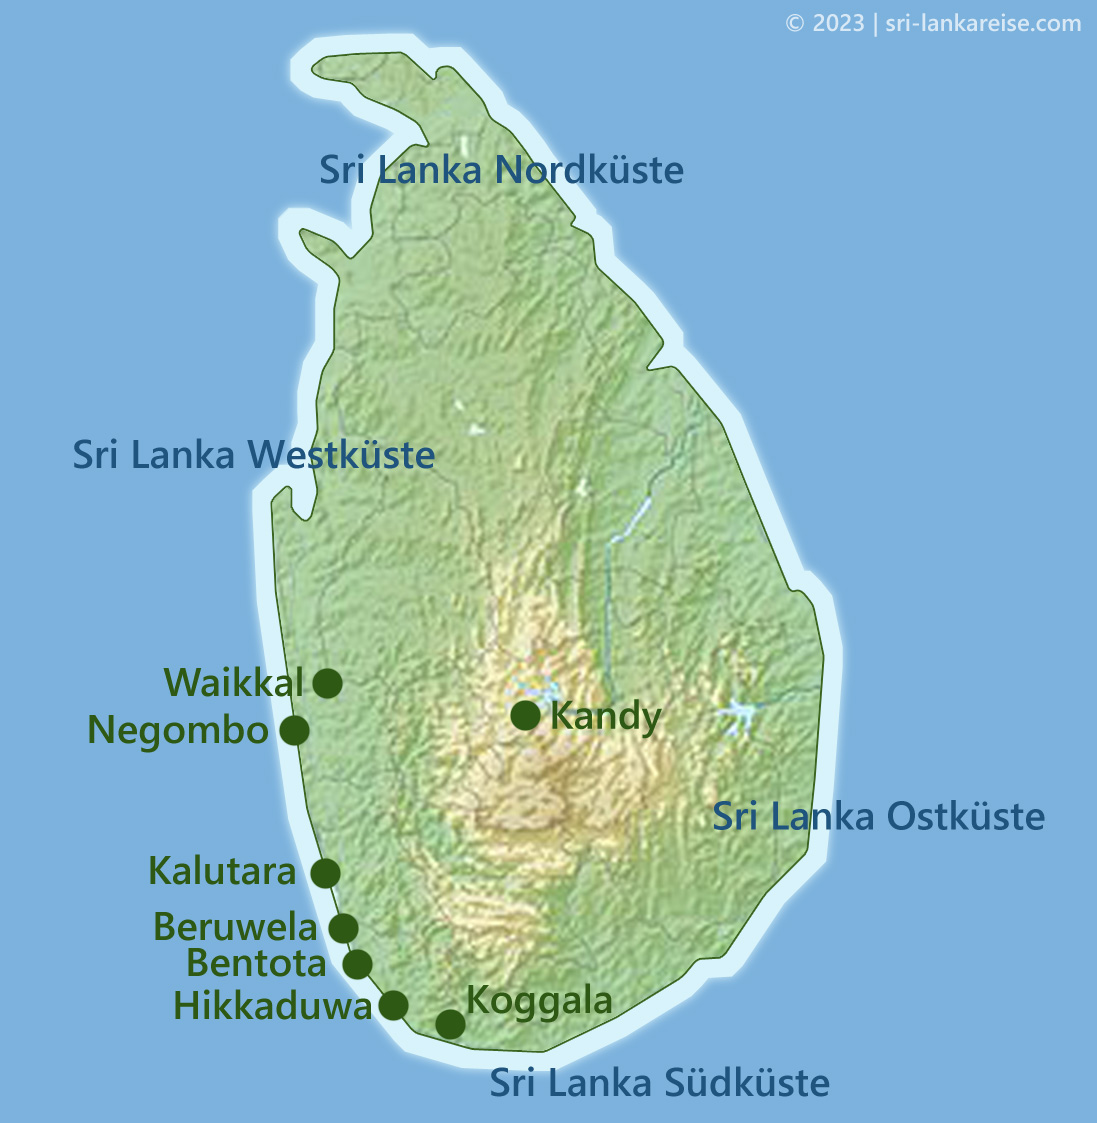 Beliebte Urlaubsorte auf Sri Lanka